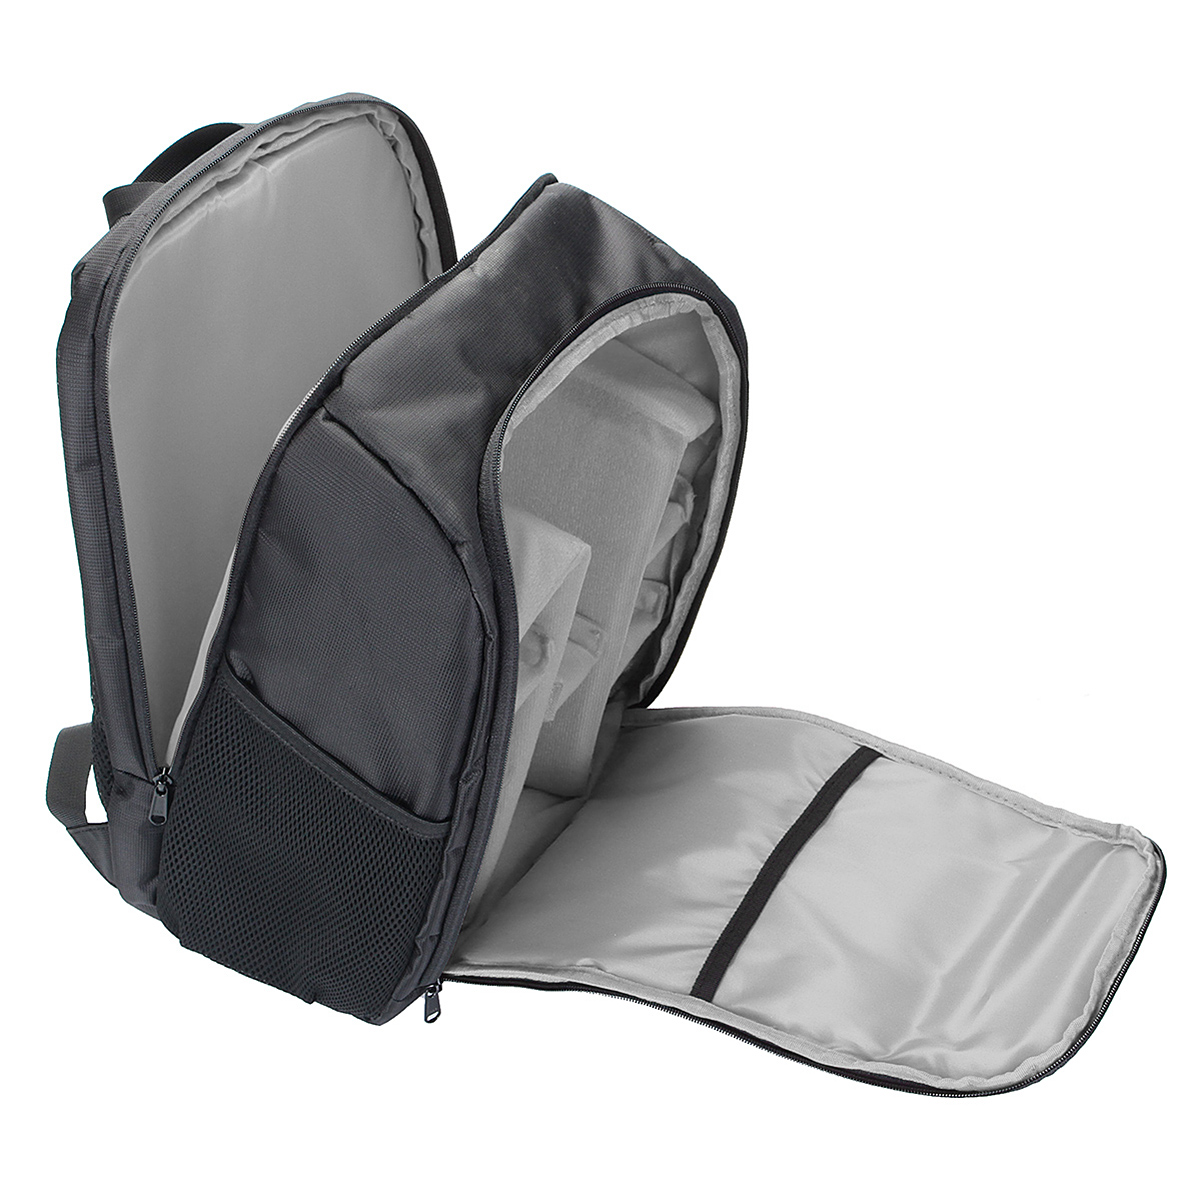 Waterproof Backpack Shoulder Bag Laptop Case For DSLR Camera Lens Accessories 15